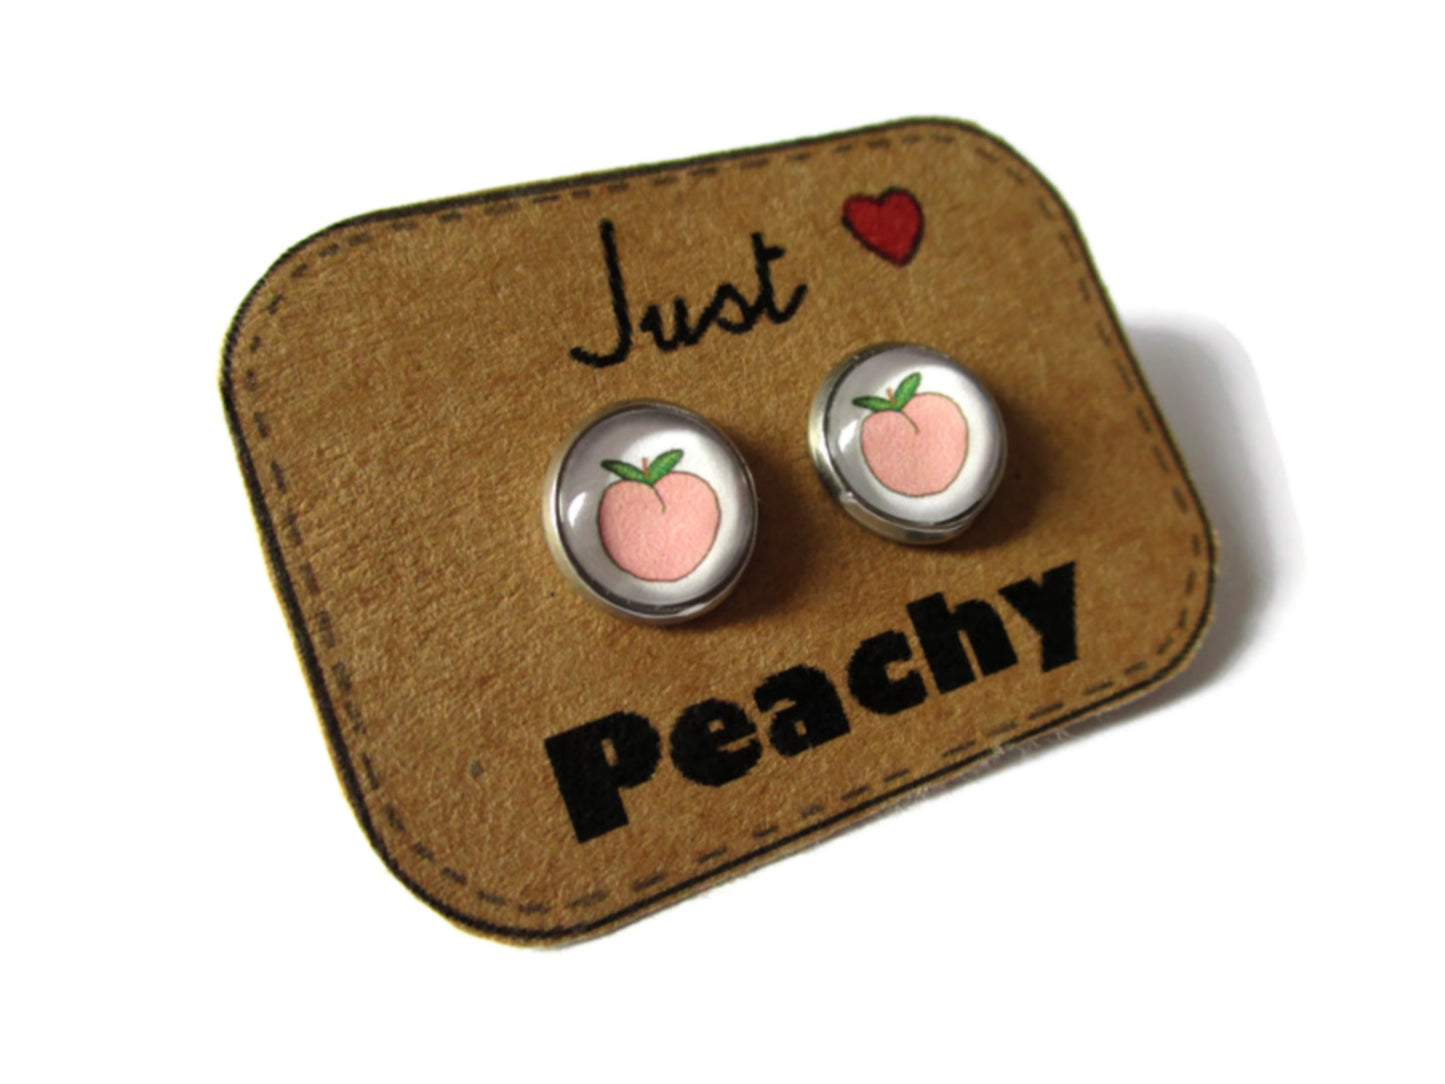 peach stud earrings / Just Peachy